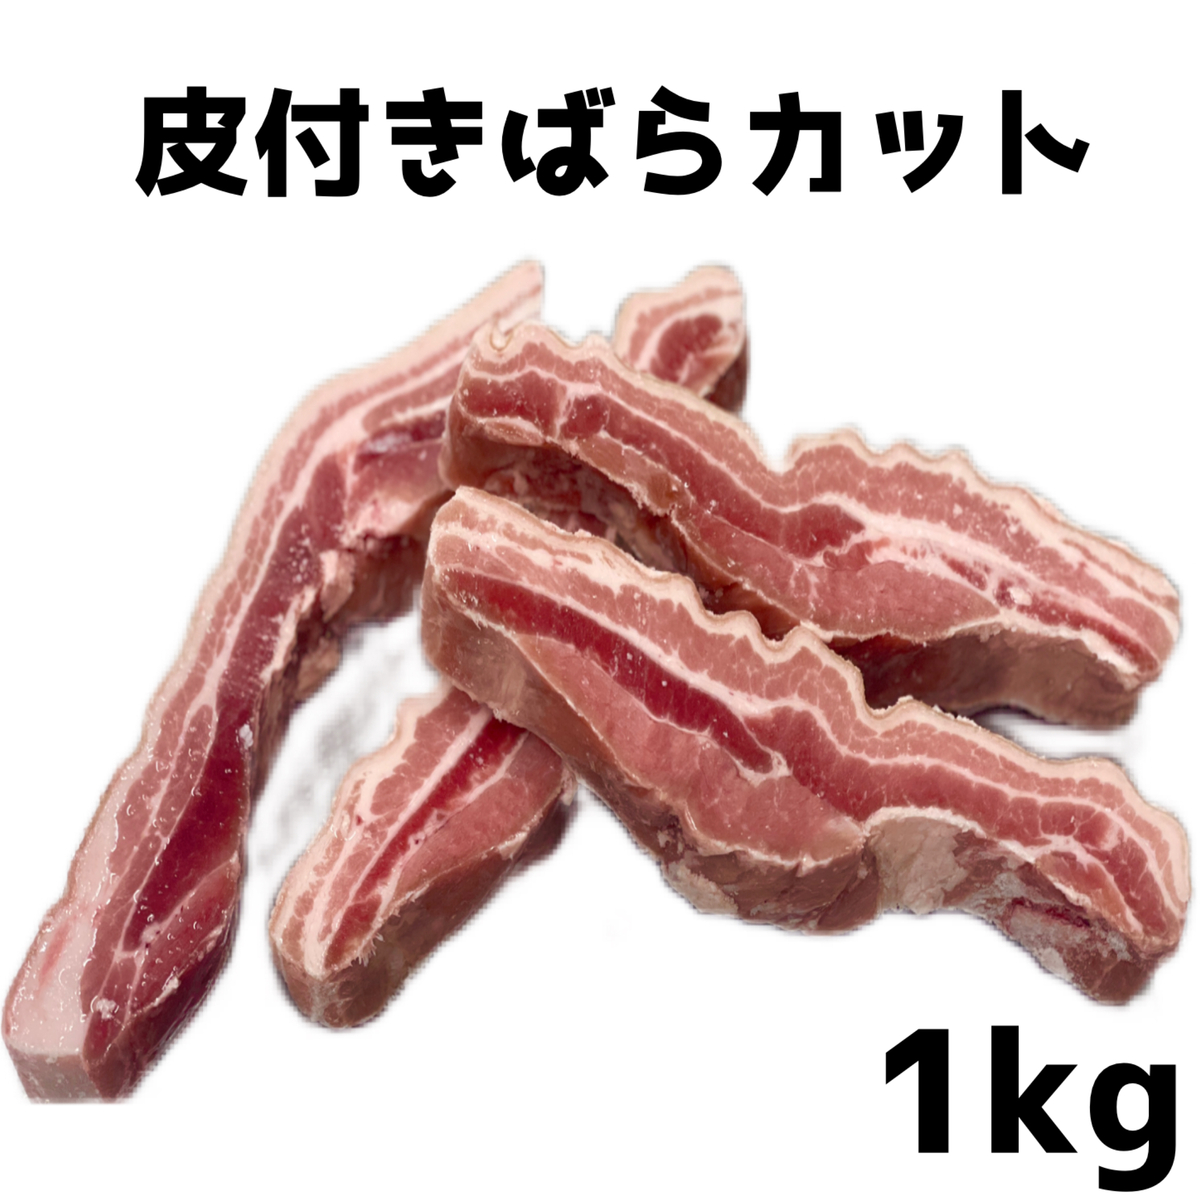 皮付き豚バラ肉 豚肉 豚皮付バラカット 1kg (送料別)) ぶた 肉 グルメ 松島ミート